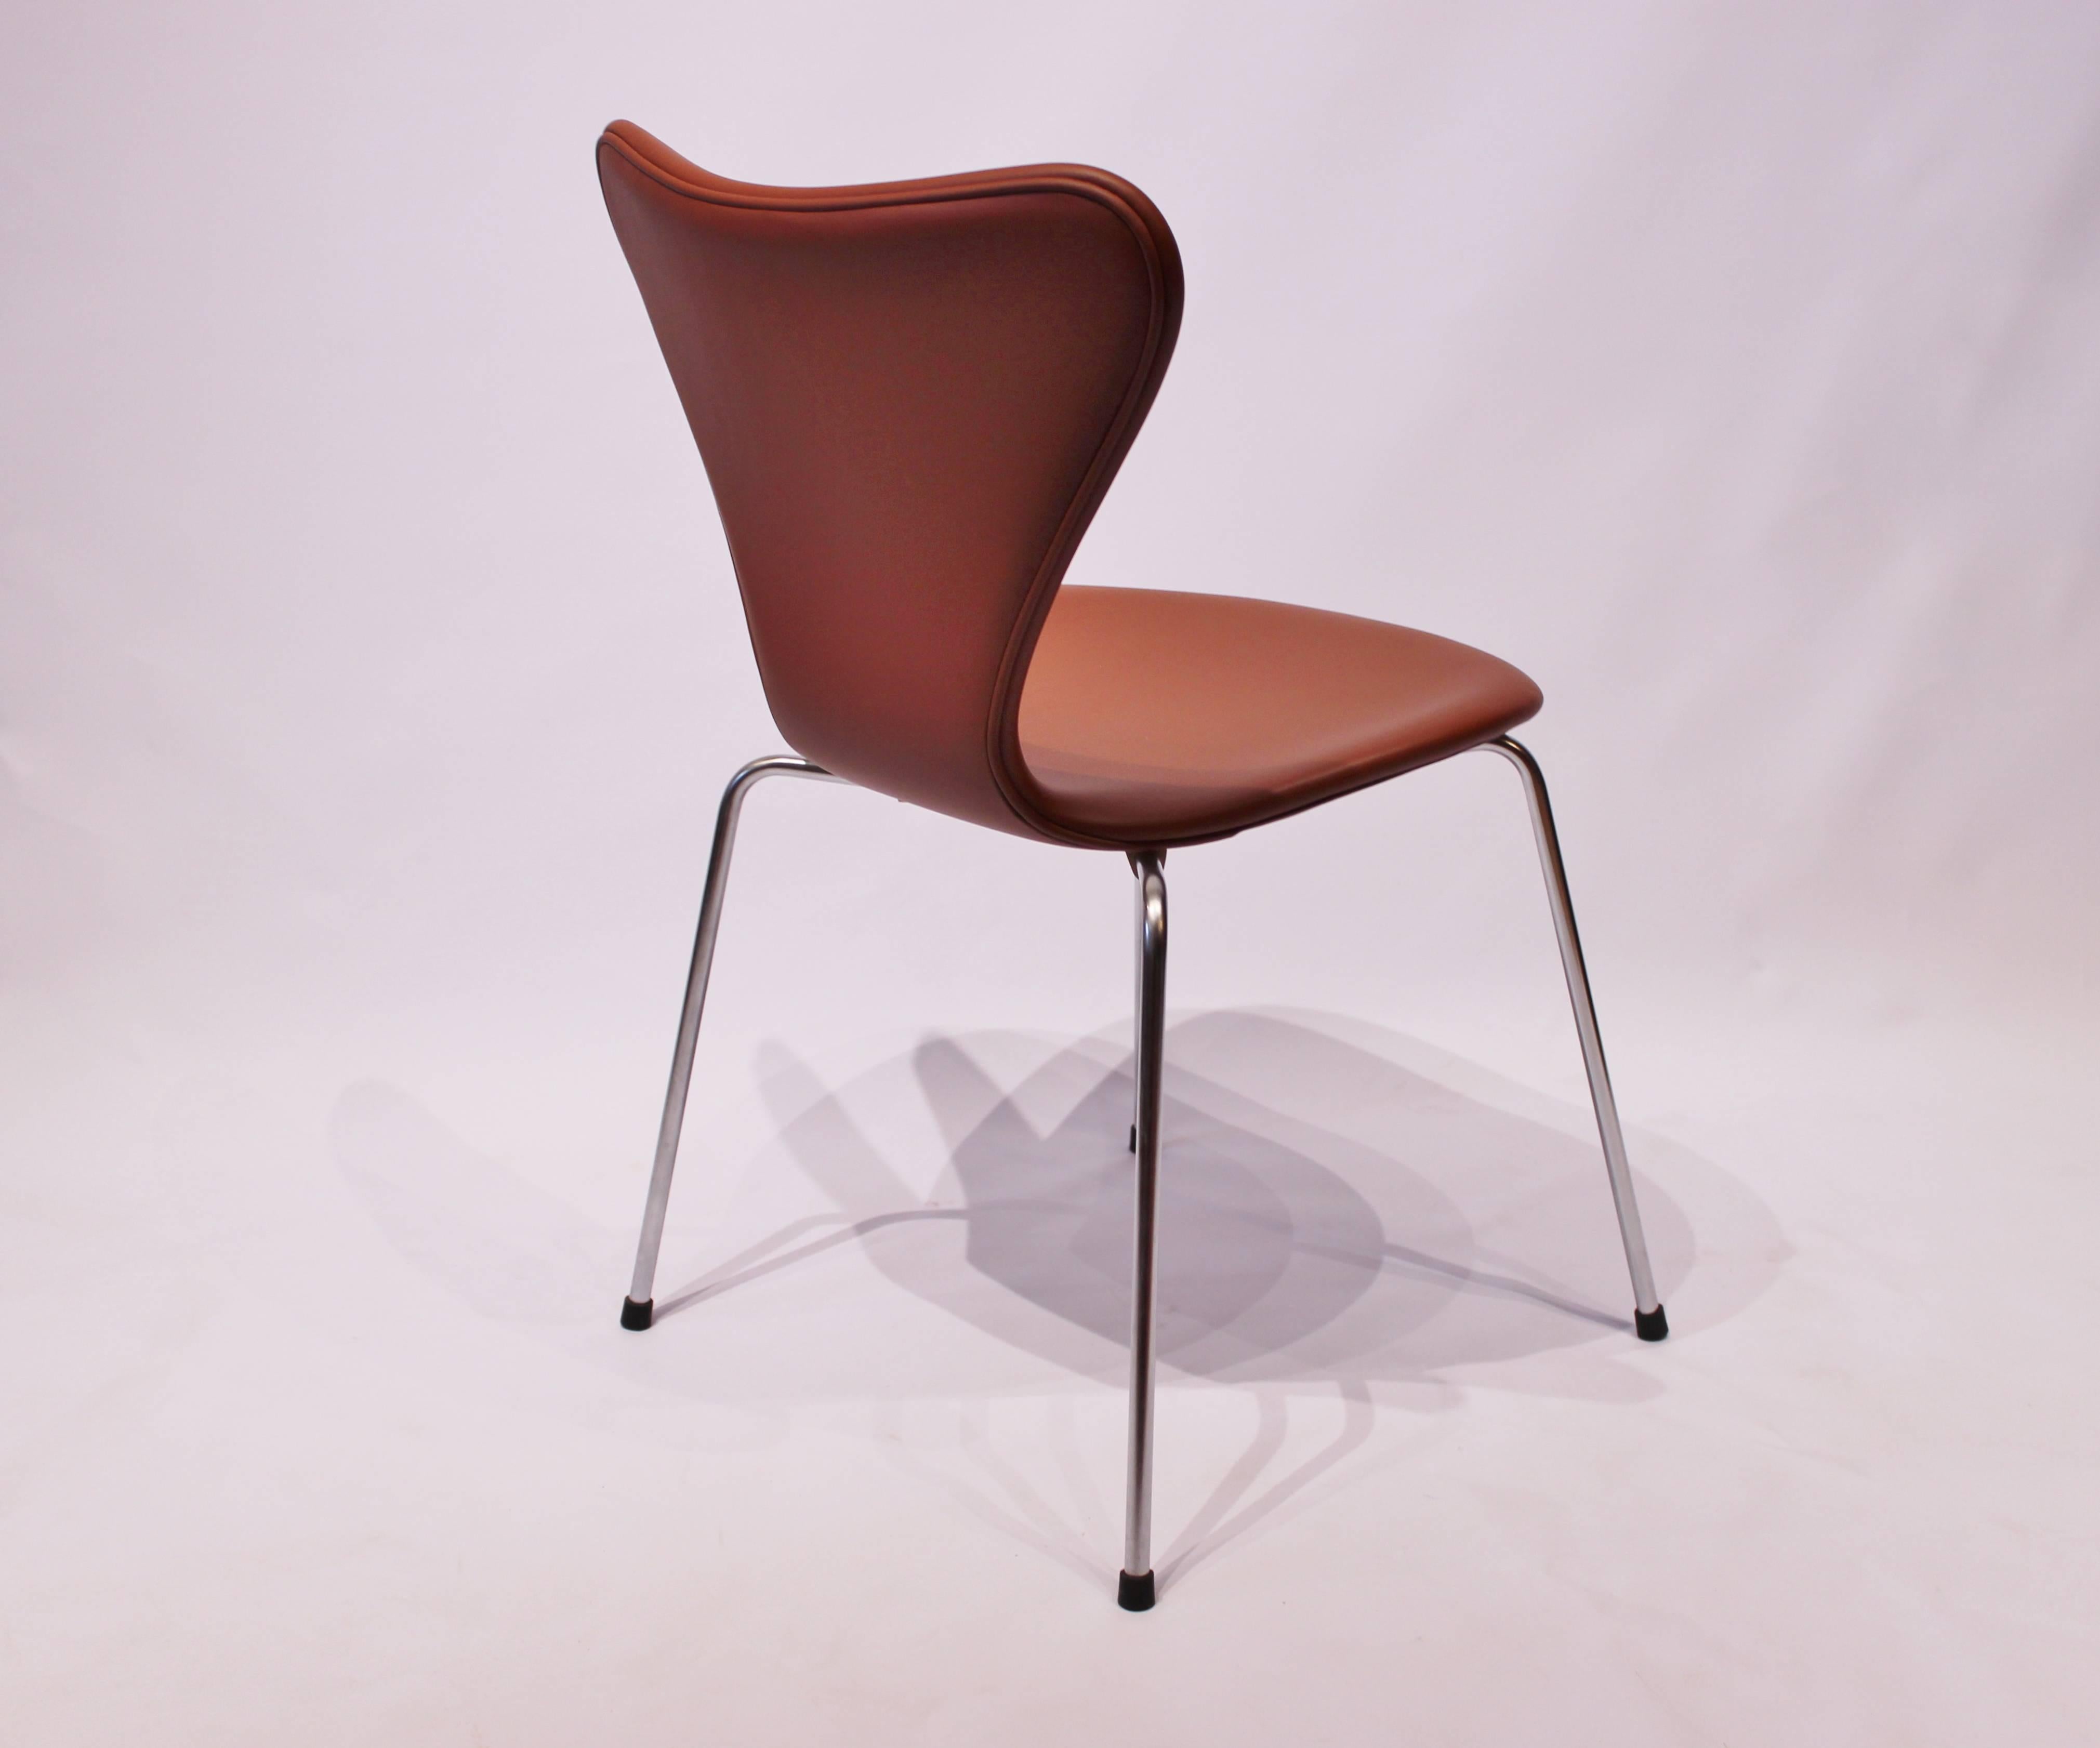 Pair of Series 7 Chair, Model 3107 in Cognac Savanne Leather by Arne Jacobsen For Sale 3